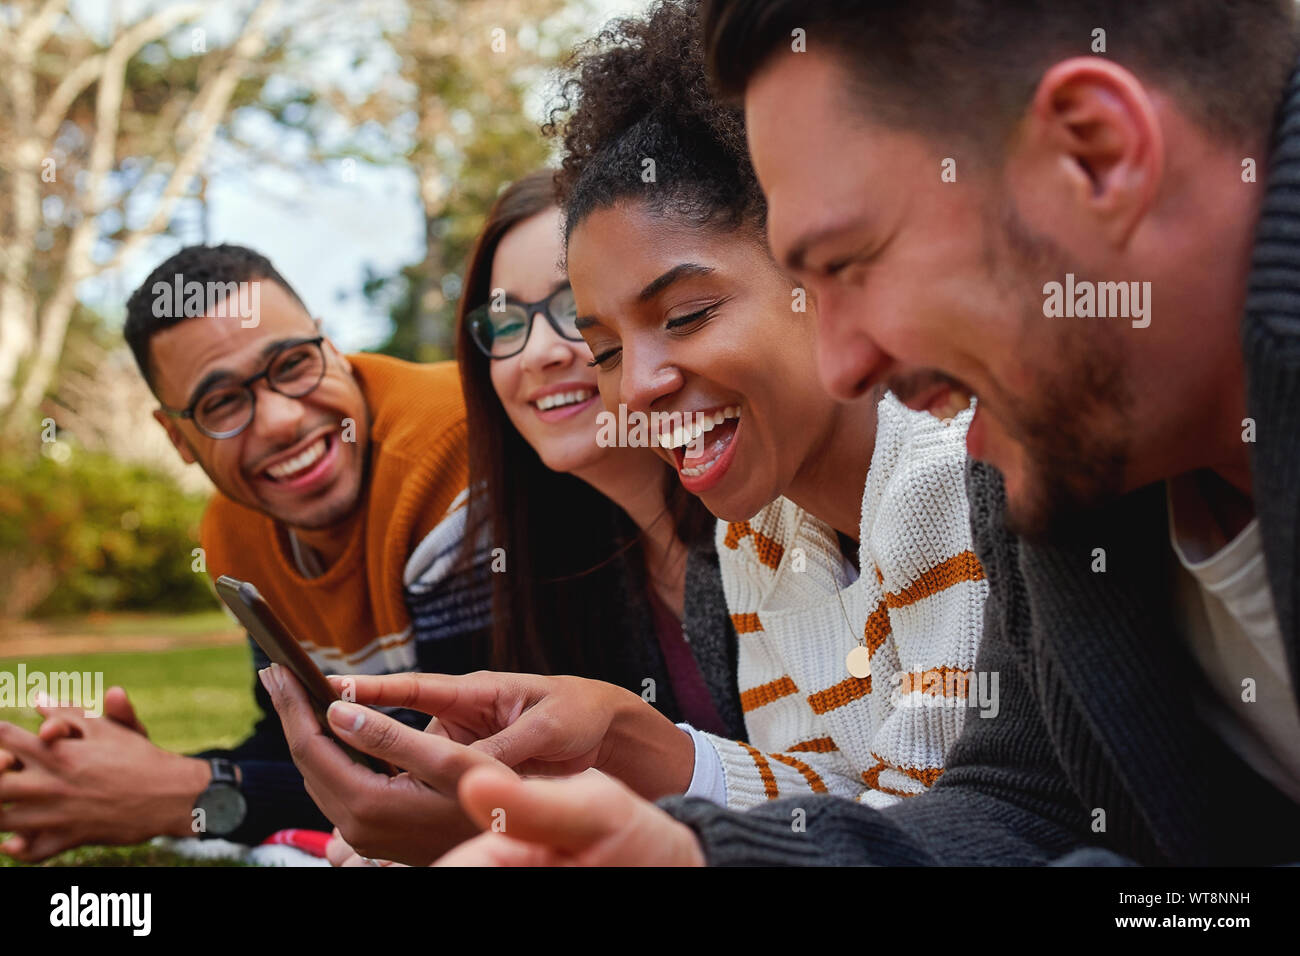 Gruppo di multi etnico amici in college giacente insieme nel parco godendo la visione di testo o video sul telefono cellulare - gruppo sorridente degli studenti Foto Stock